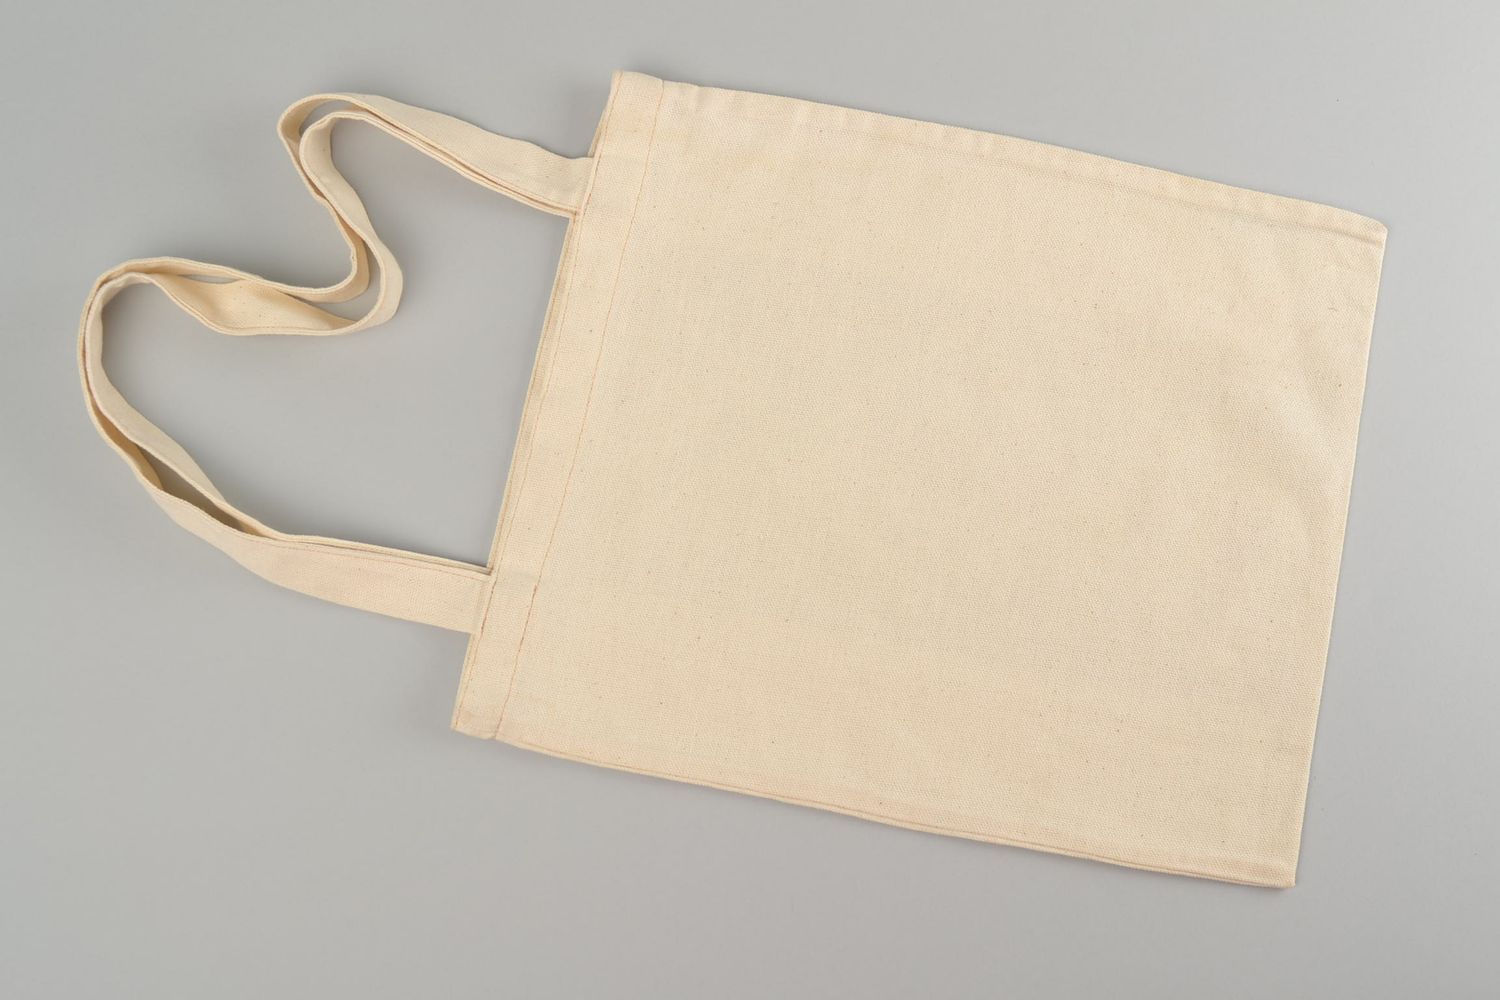 Текстильная эко сумка с принтом в романтическом стиле аксессуар ручной работы фото 4